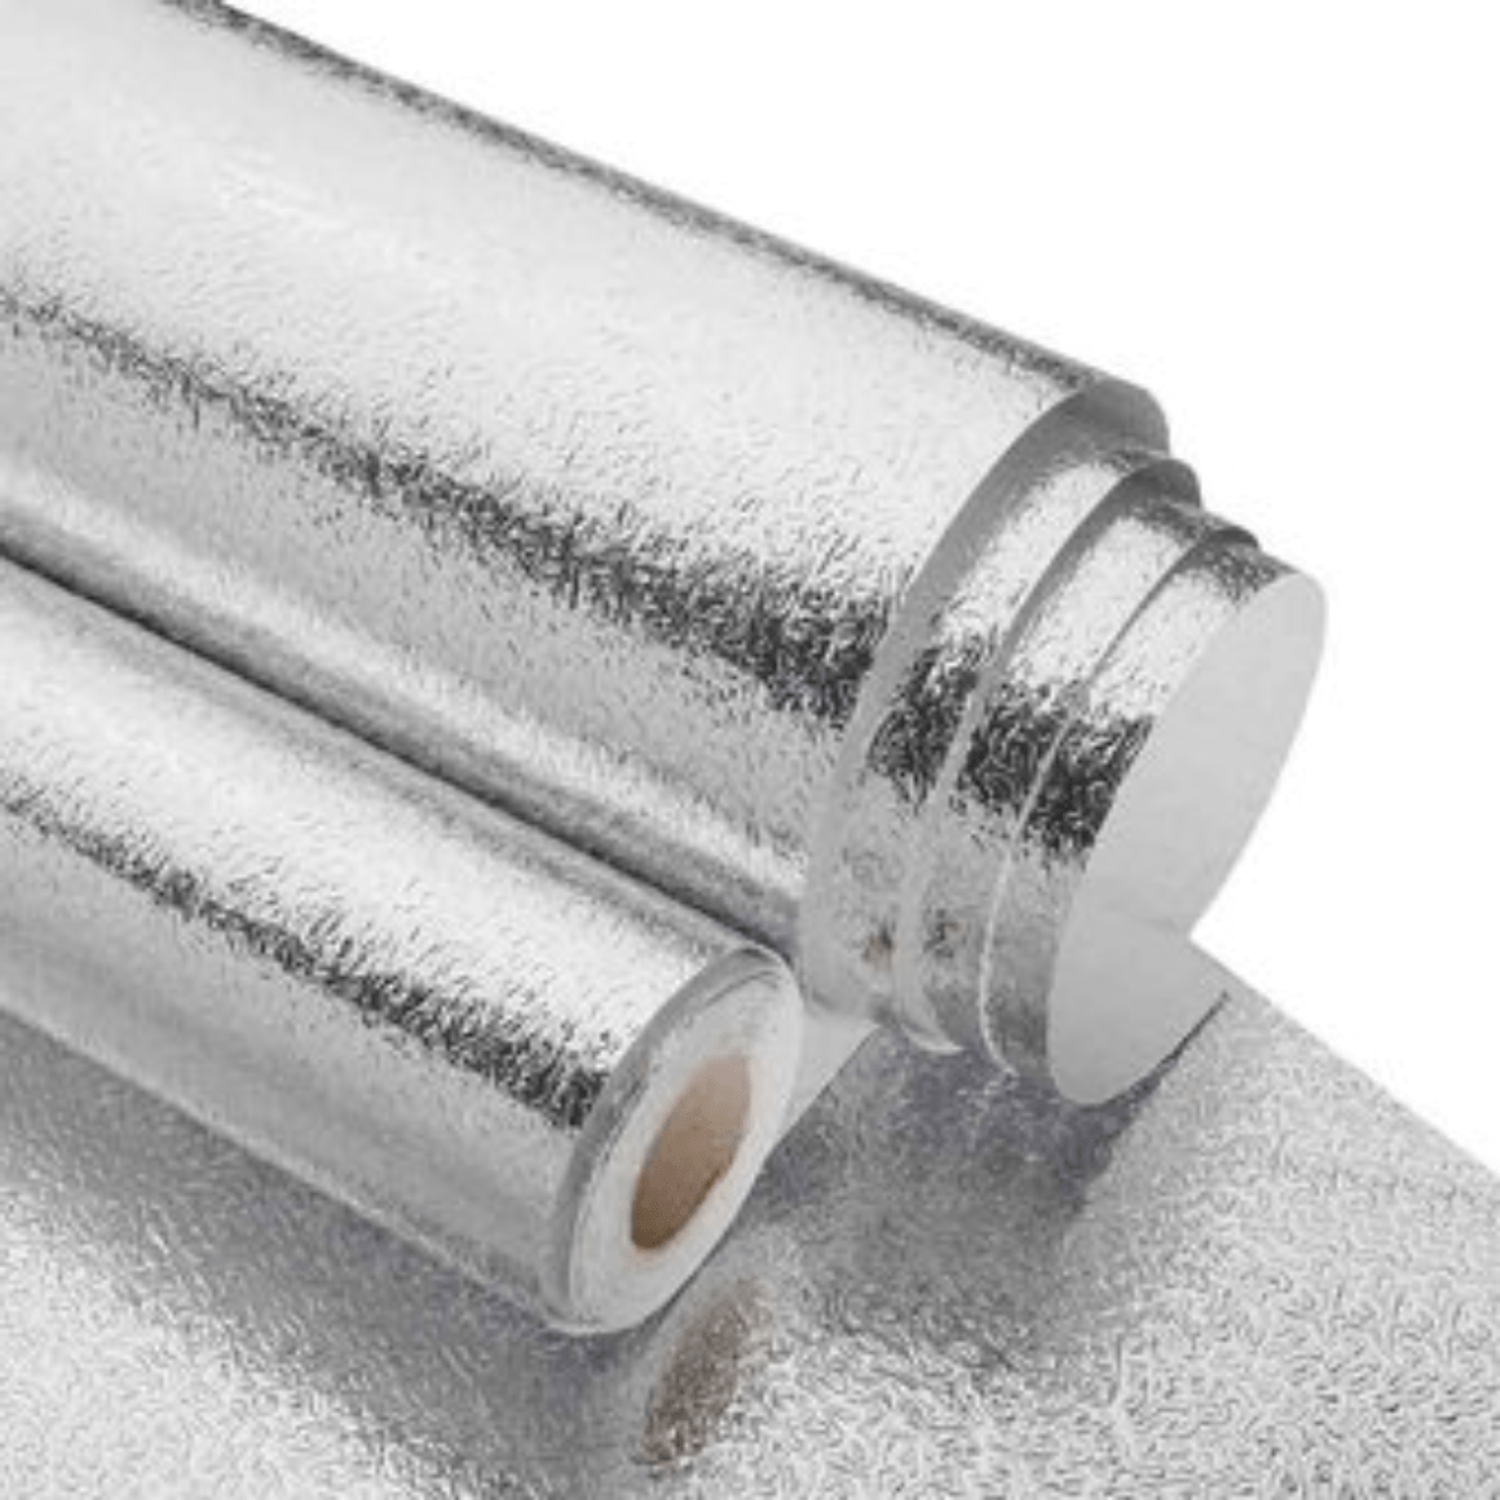 Papel Aluminio de Cocina de 8 Metros | Oechsle